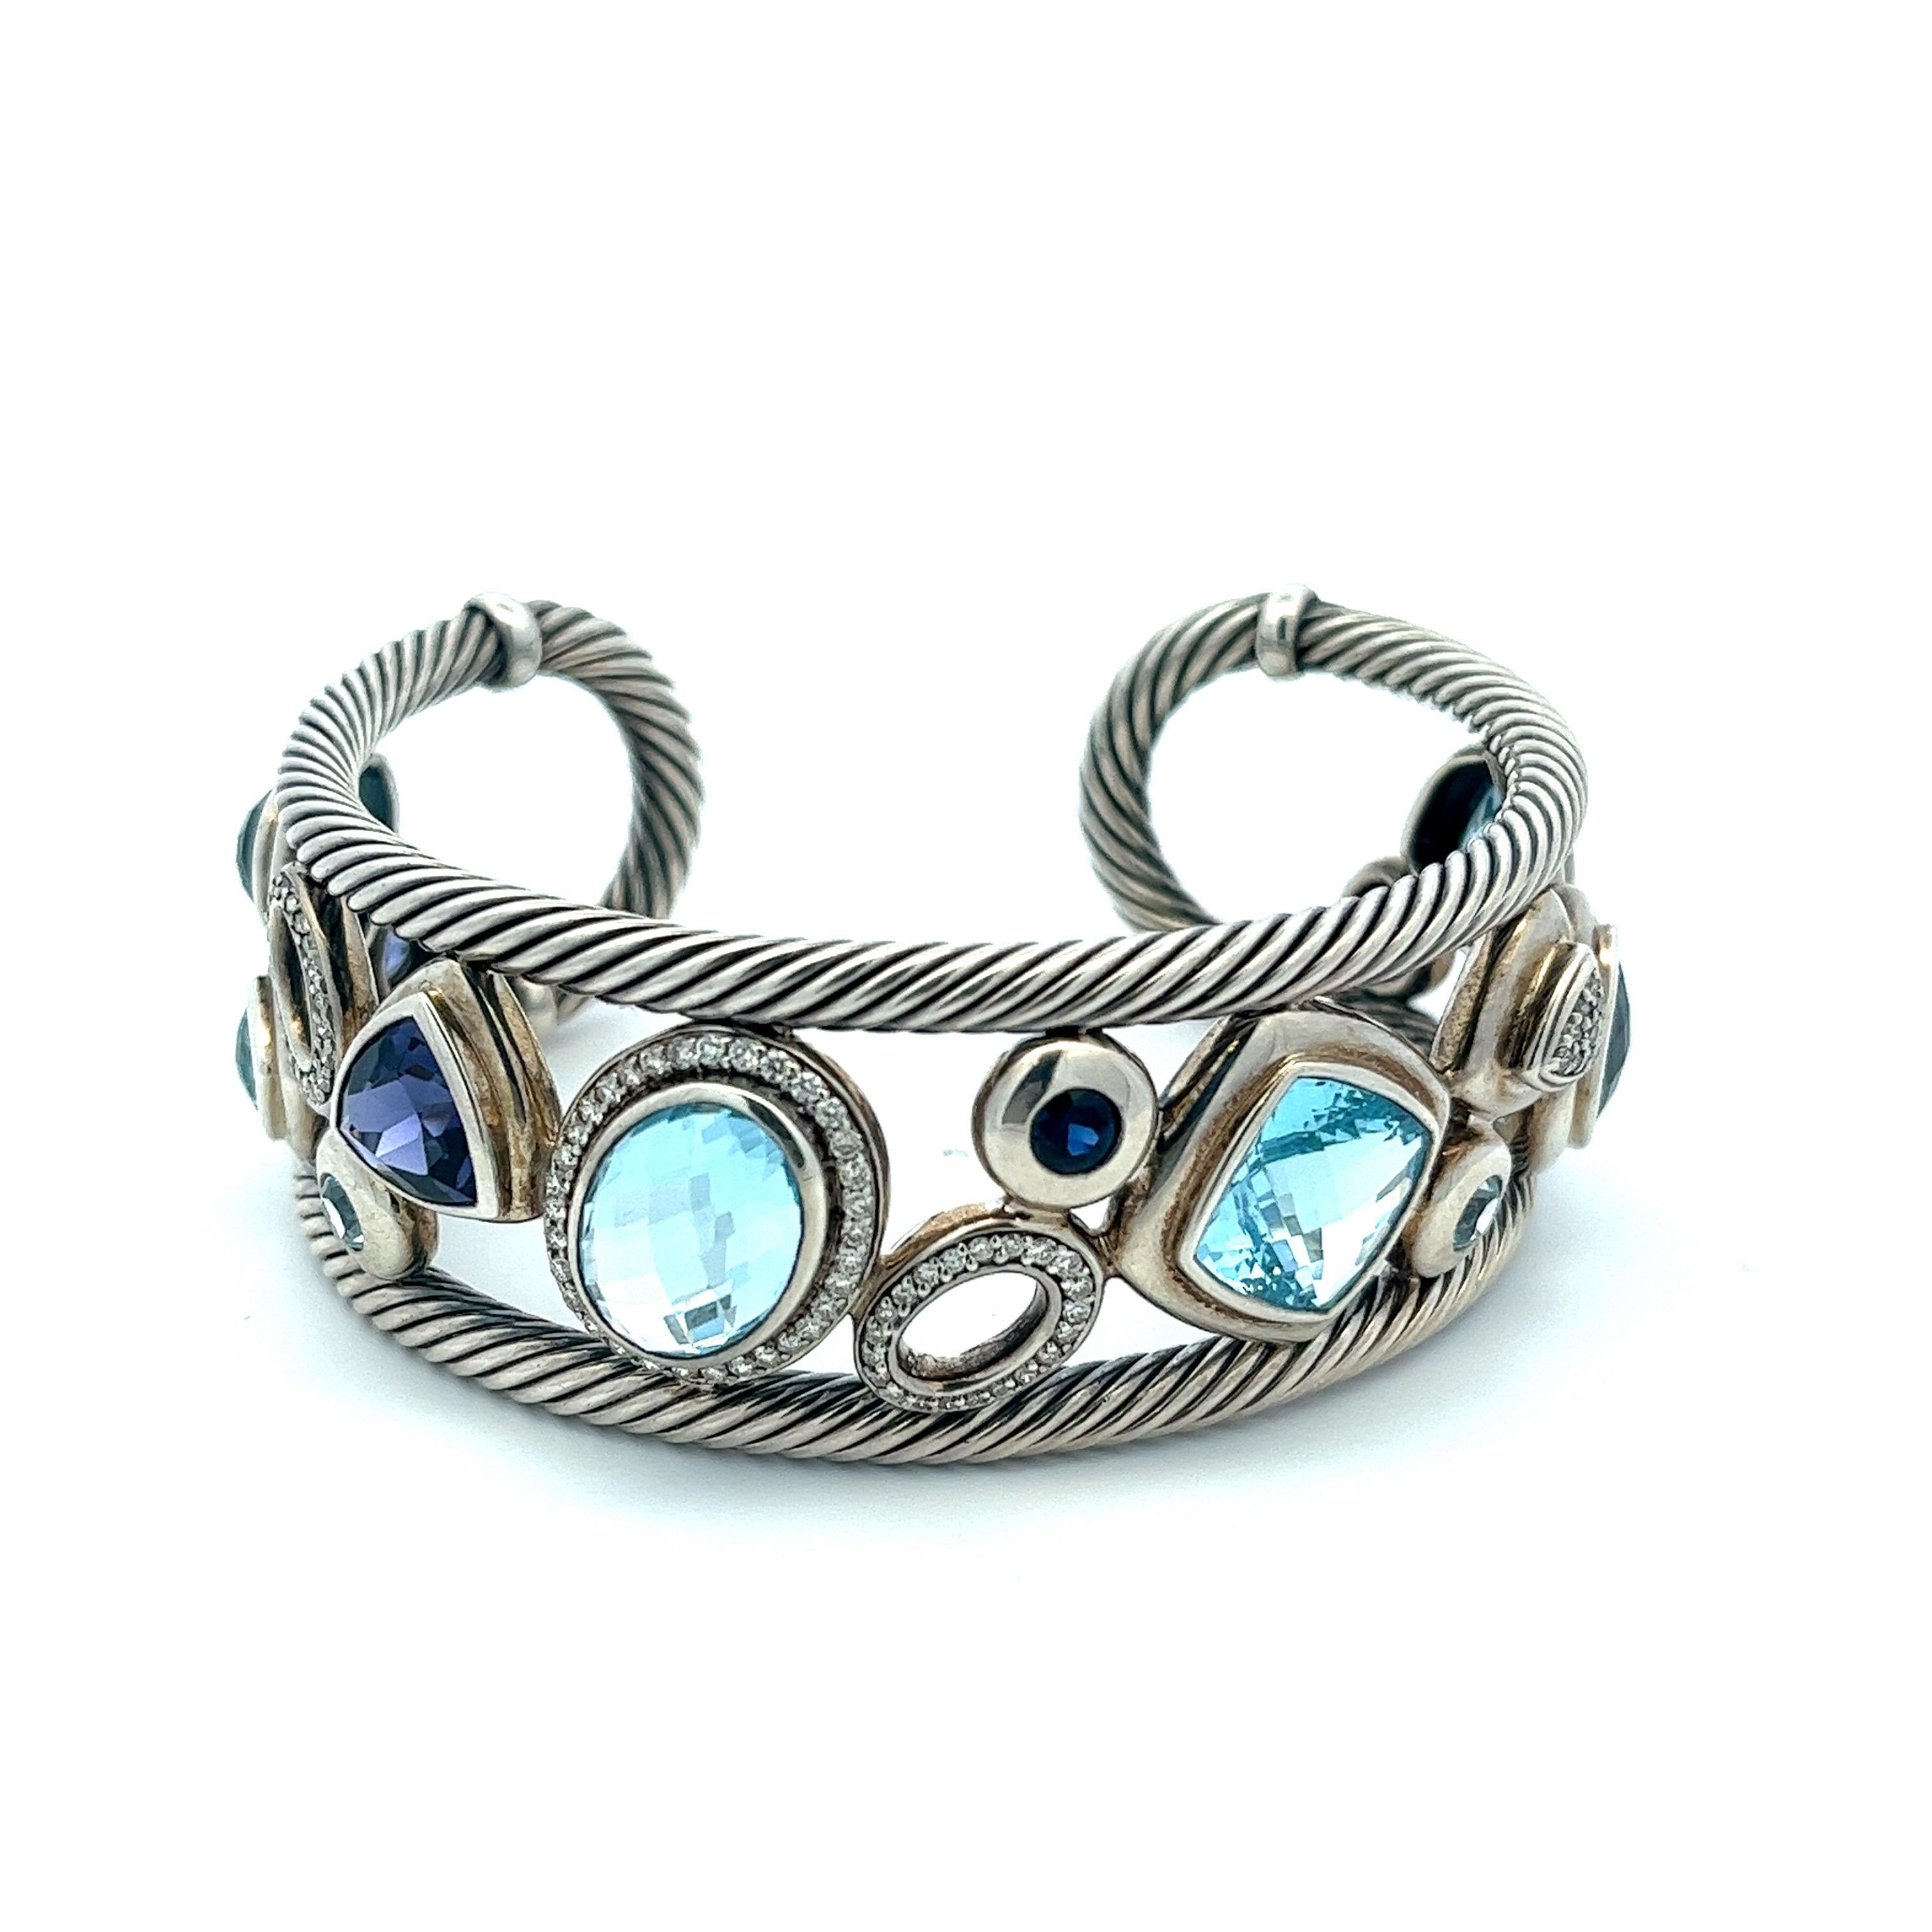 Women's or Men's Modernist David Yurman Blue Oval Mosaic Cuff Bracelet in Sterling Silver 925